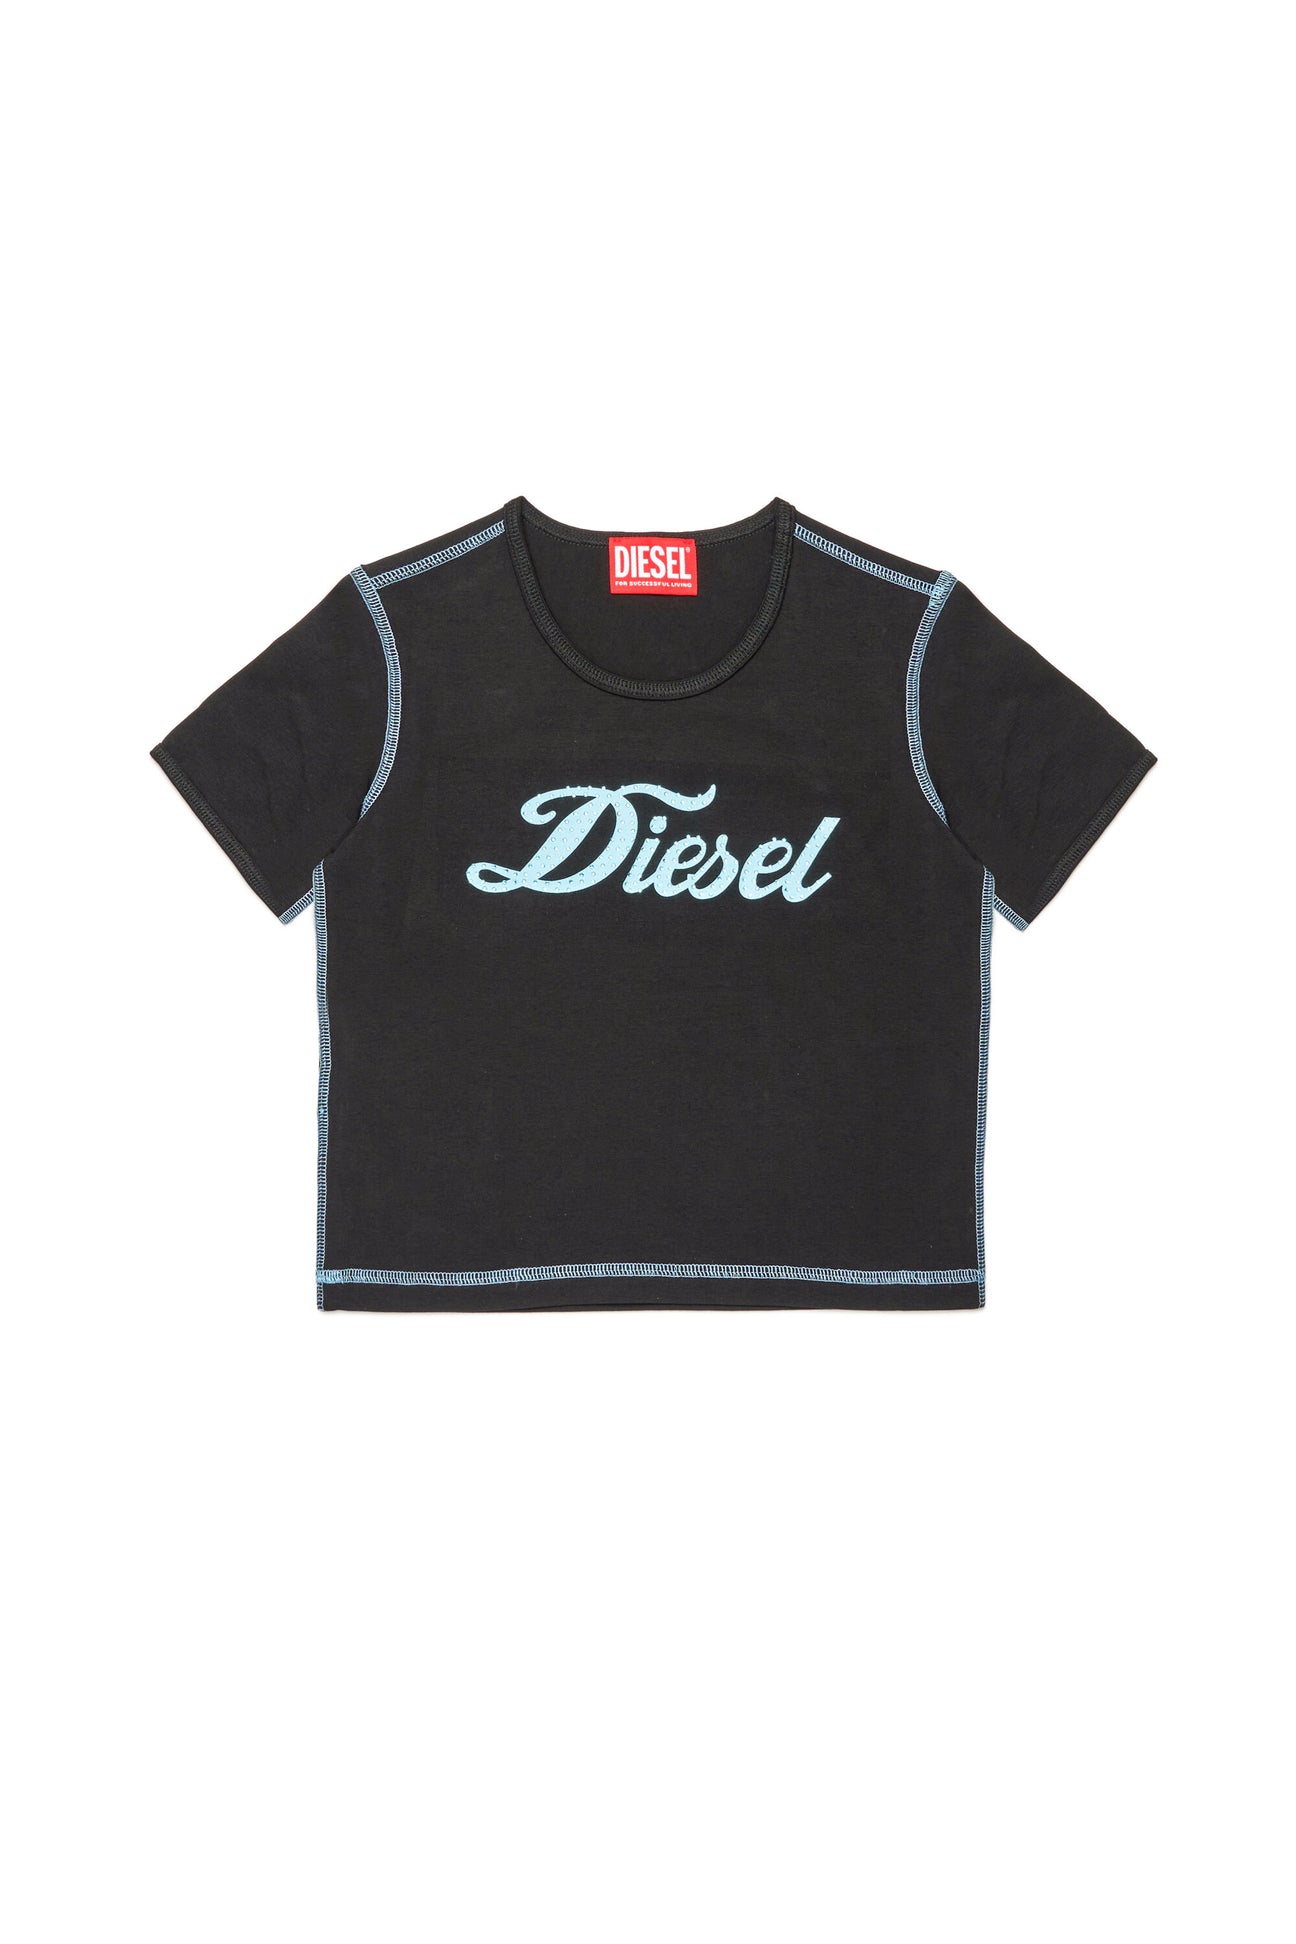 Camiseta con logo Diesel en cursiva Camiseta con logo Diesel en cursiva